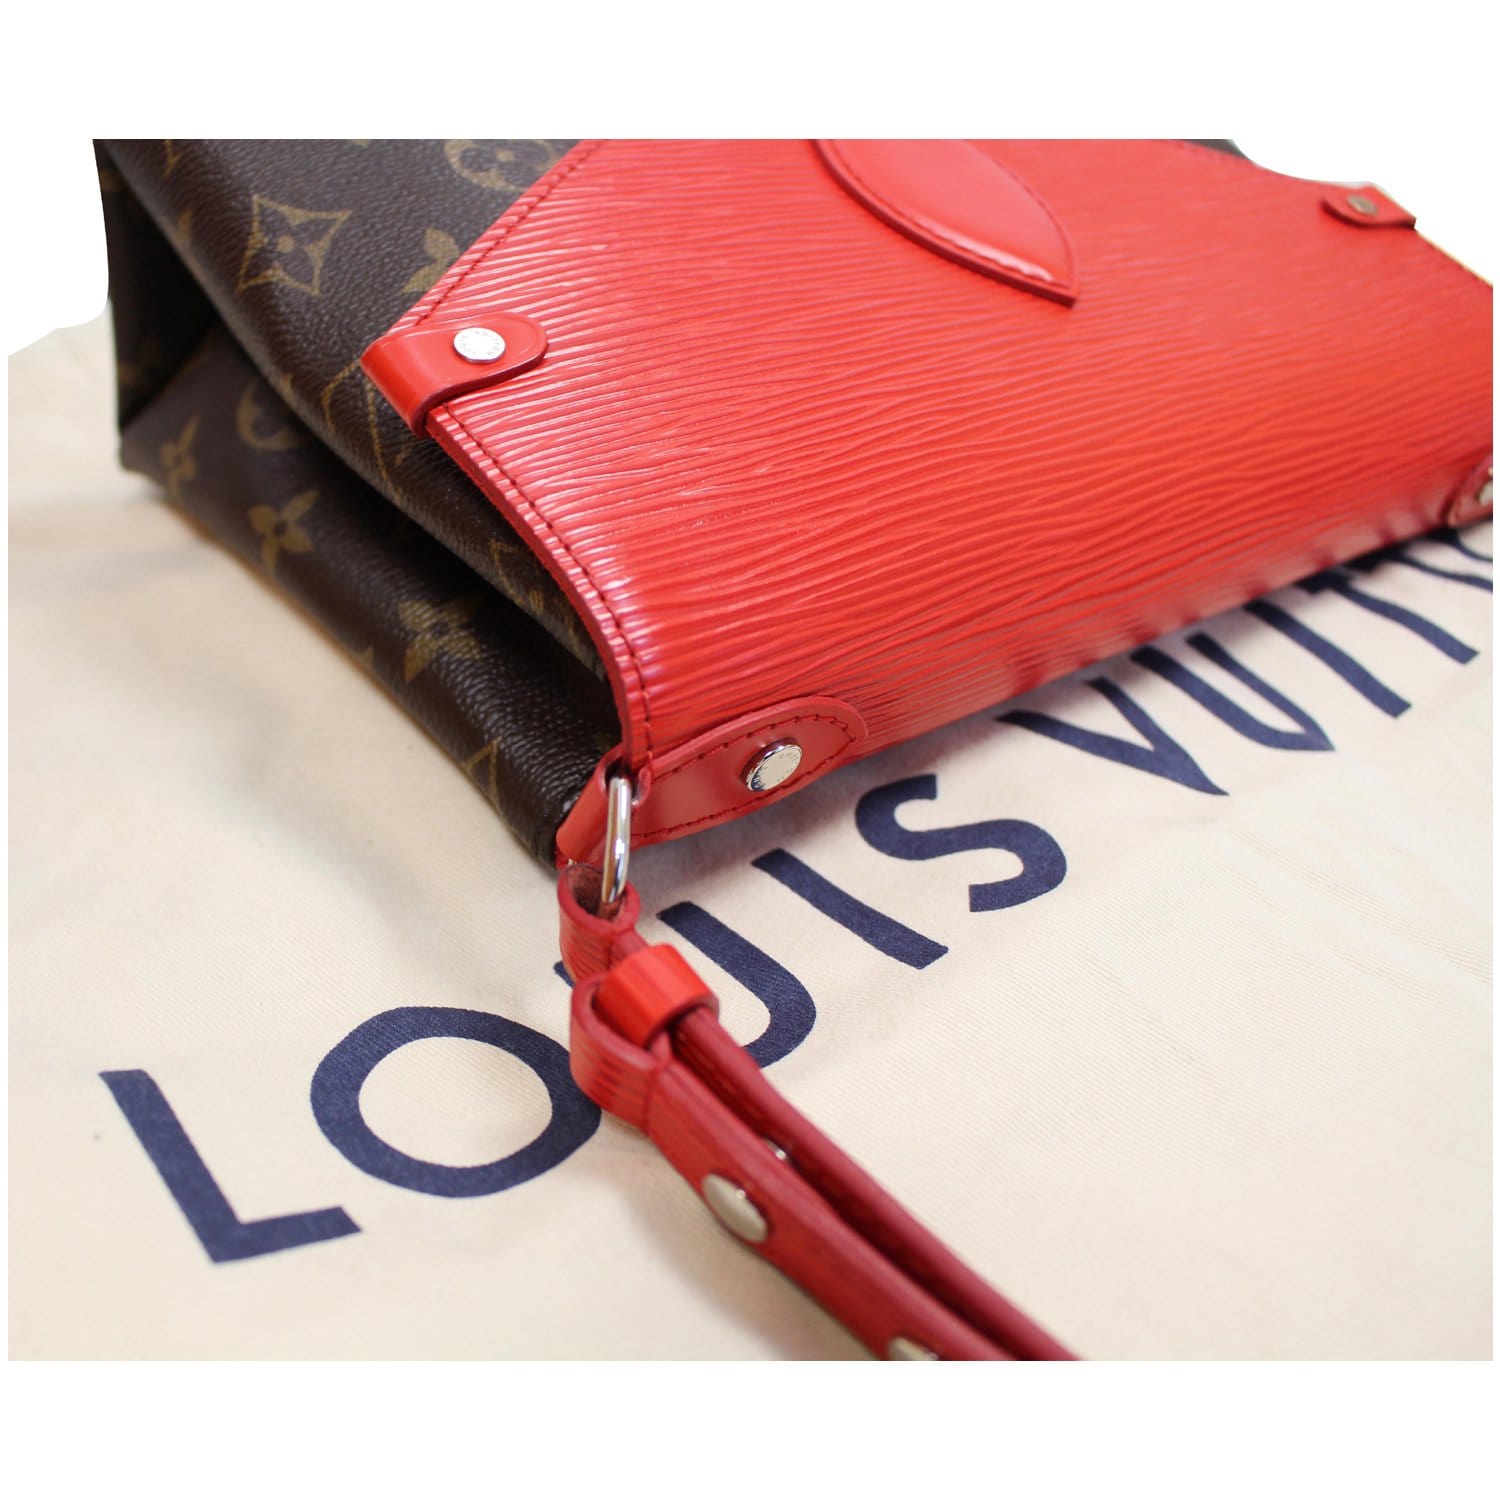 LOUIS VUITTON Saint Michel Monogram Epi Shoulder Bag Red